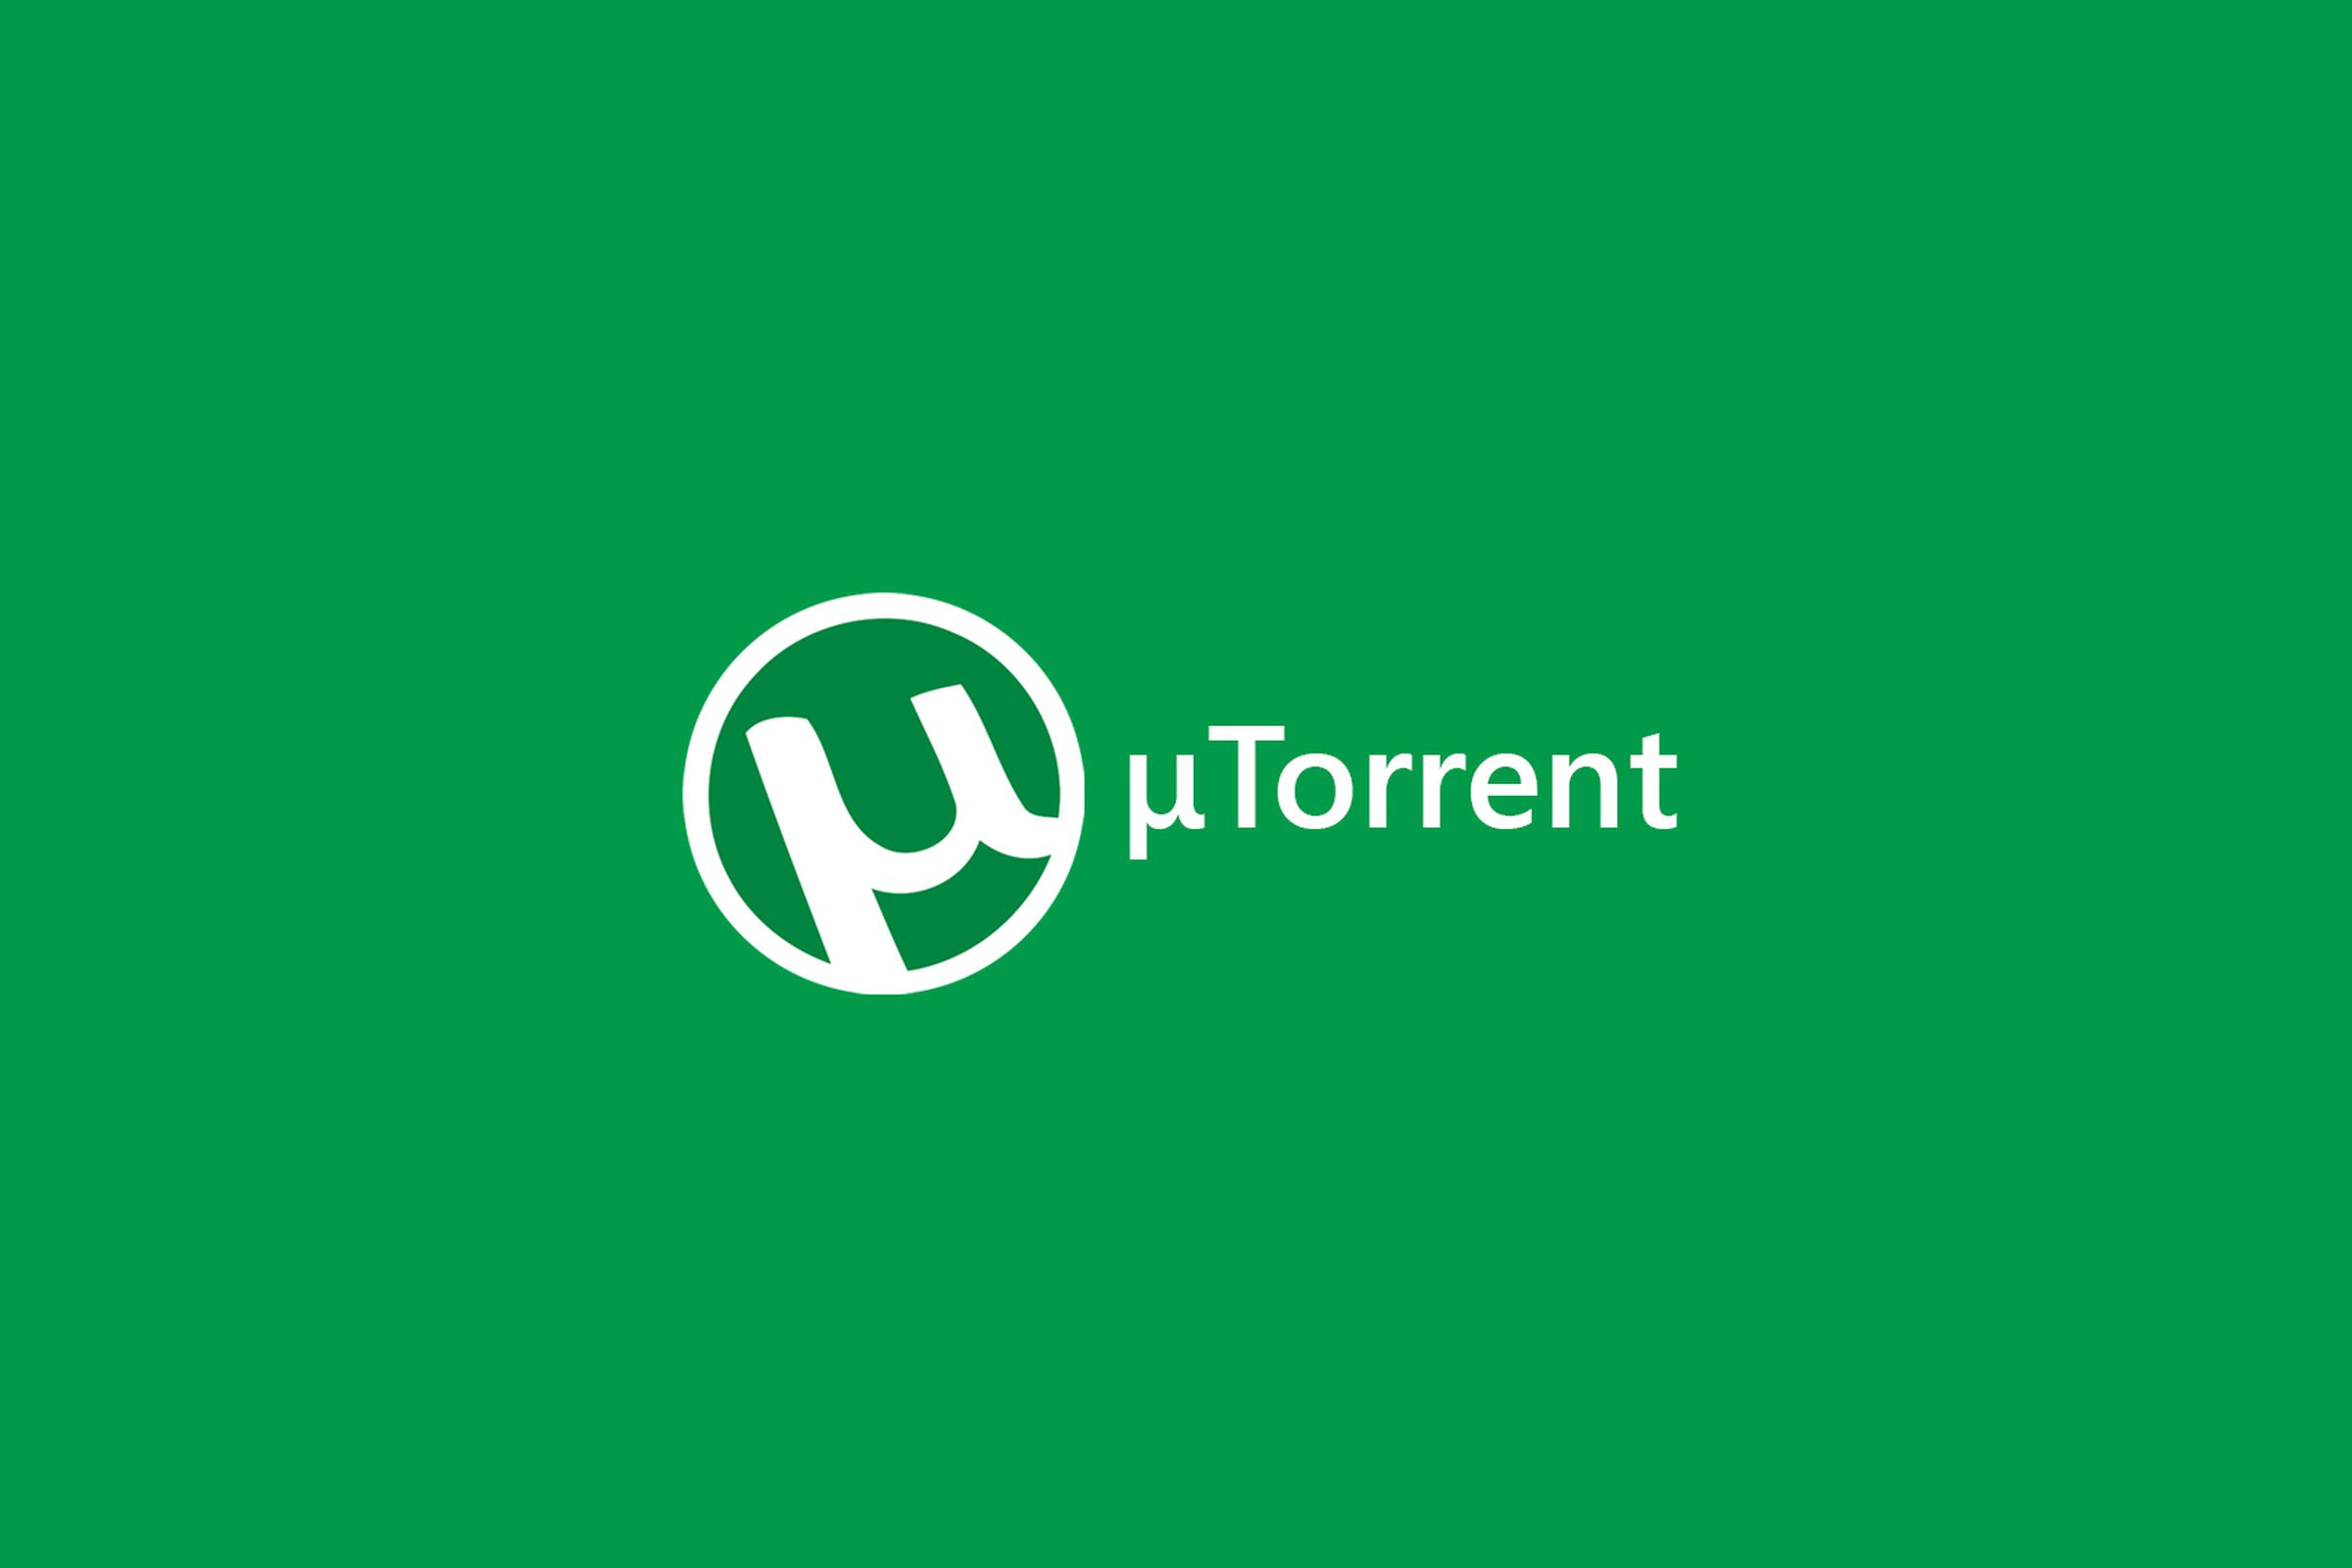 Www utorrent com intl. Utorrent. Utorrent картинки. Значок utorrent.